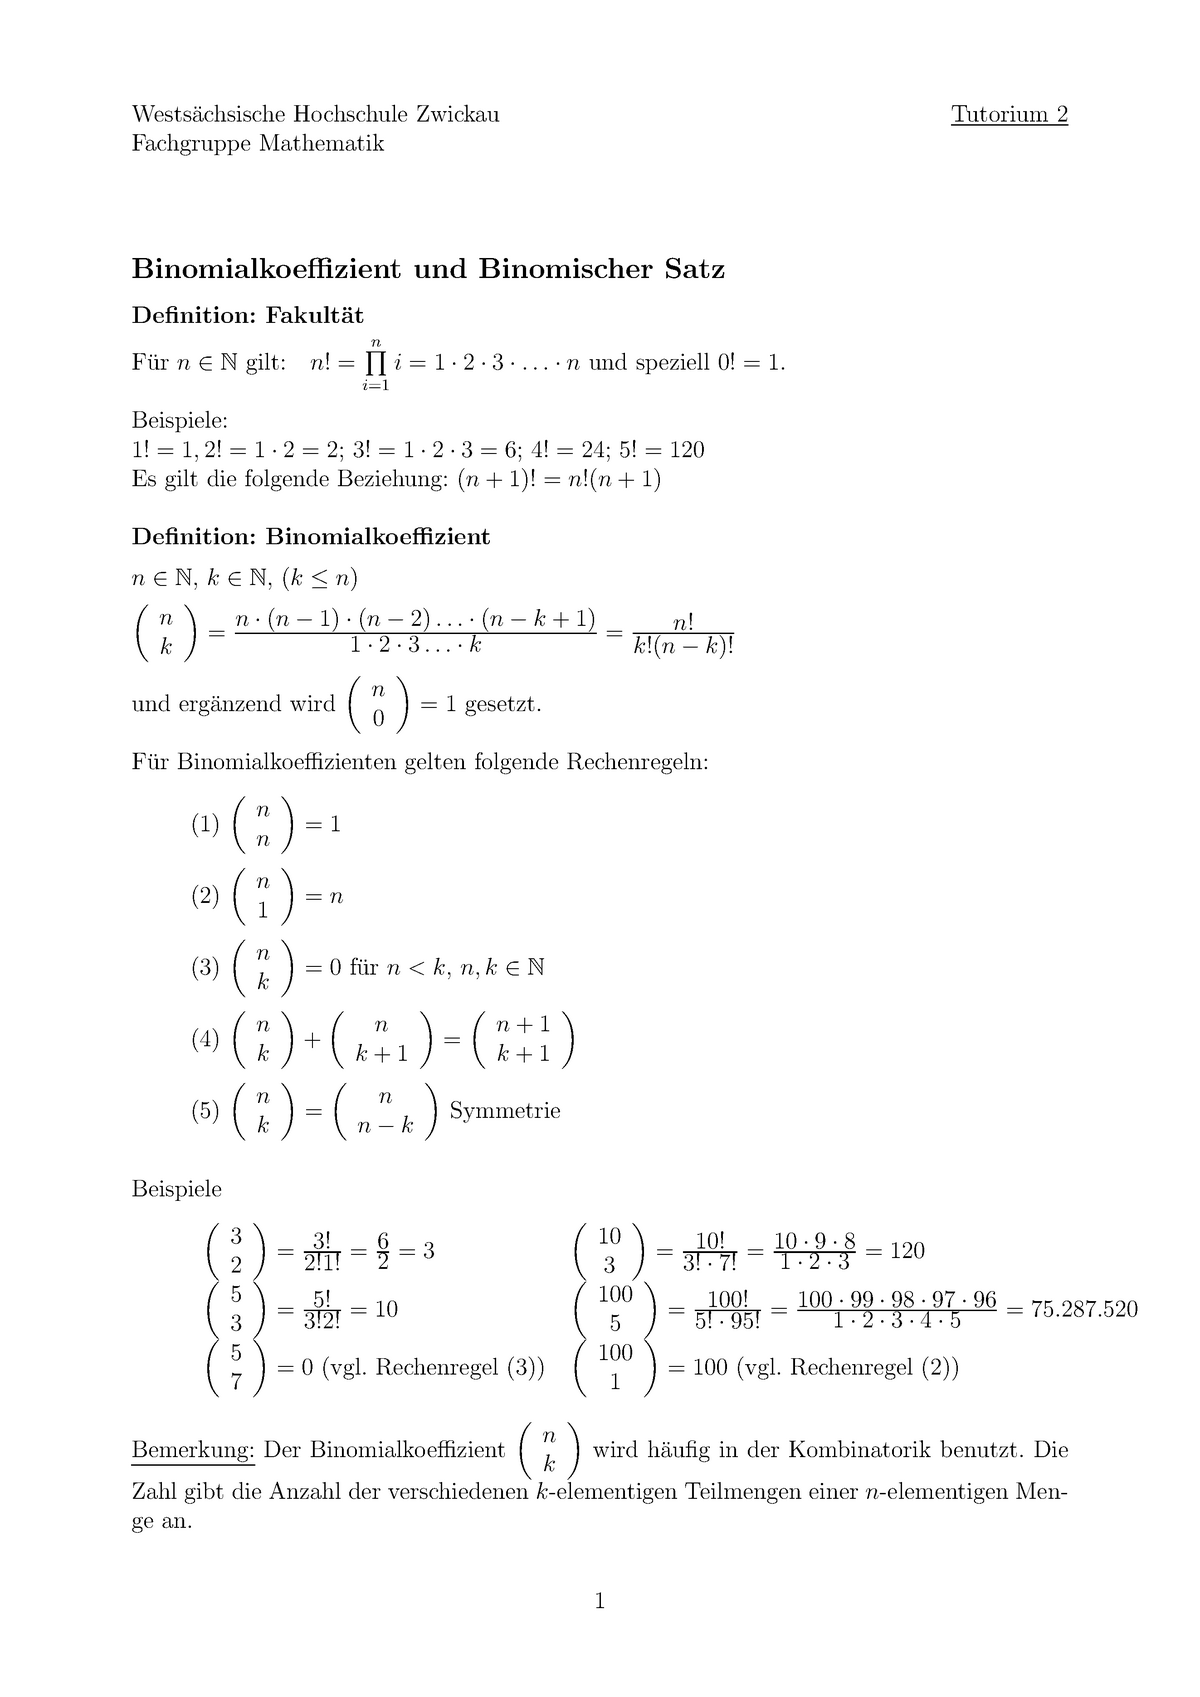 Lösung Binomialkoeffizient, n über k